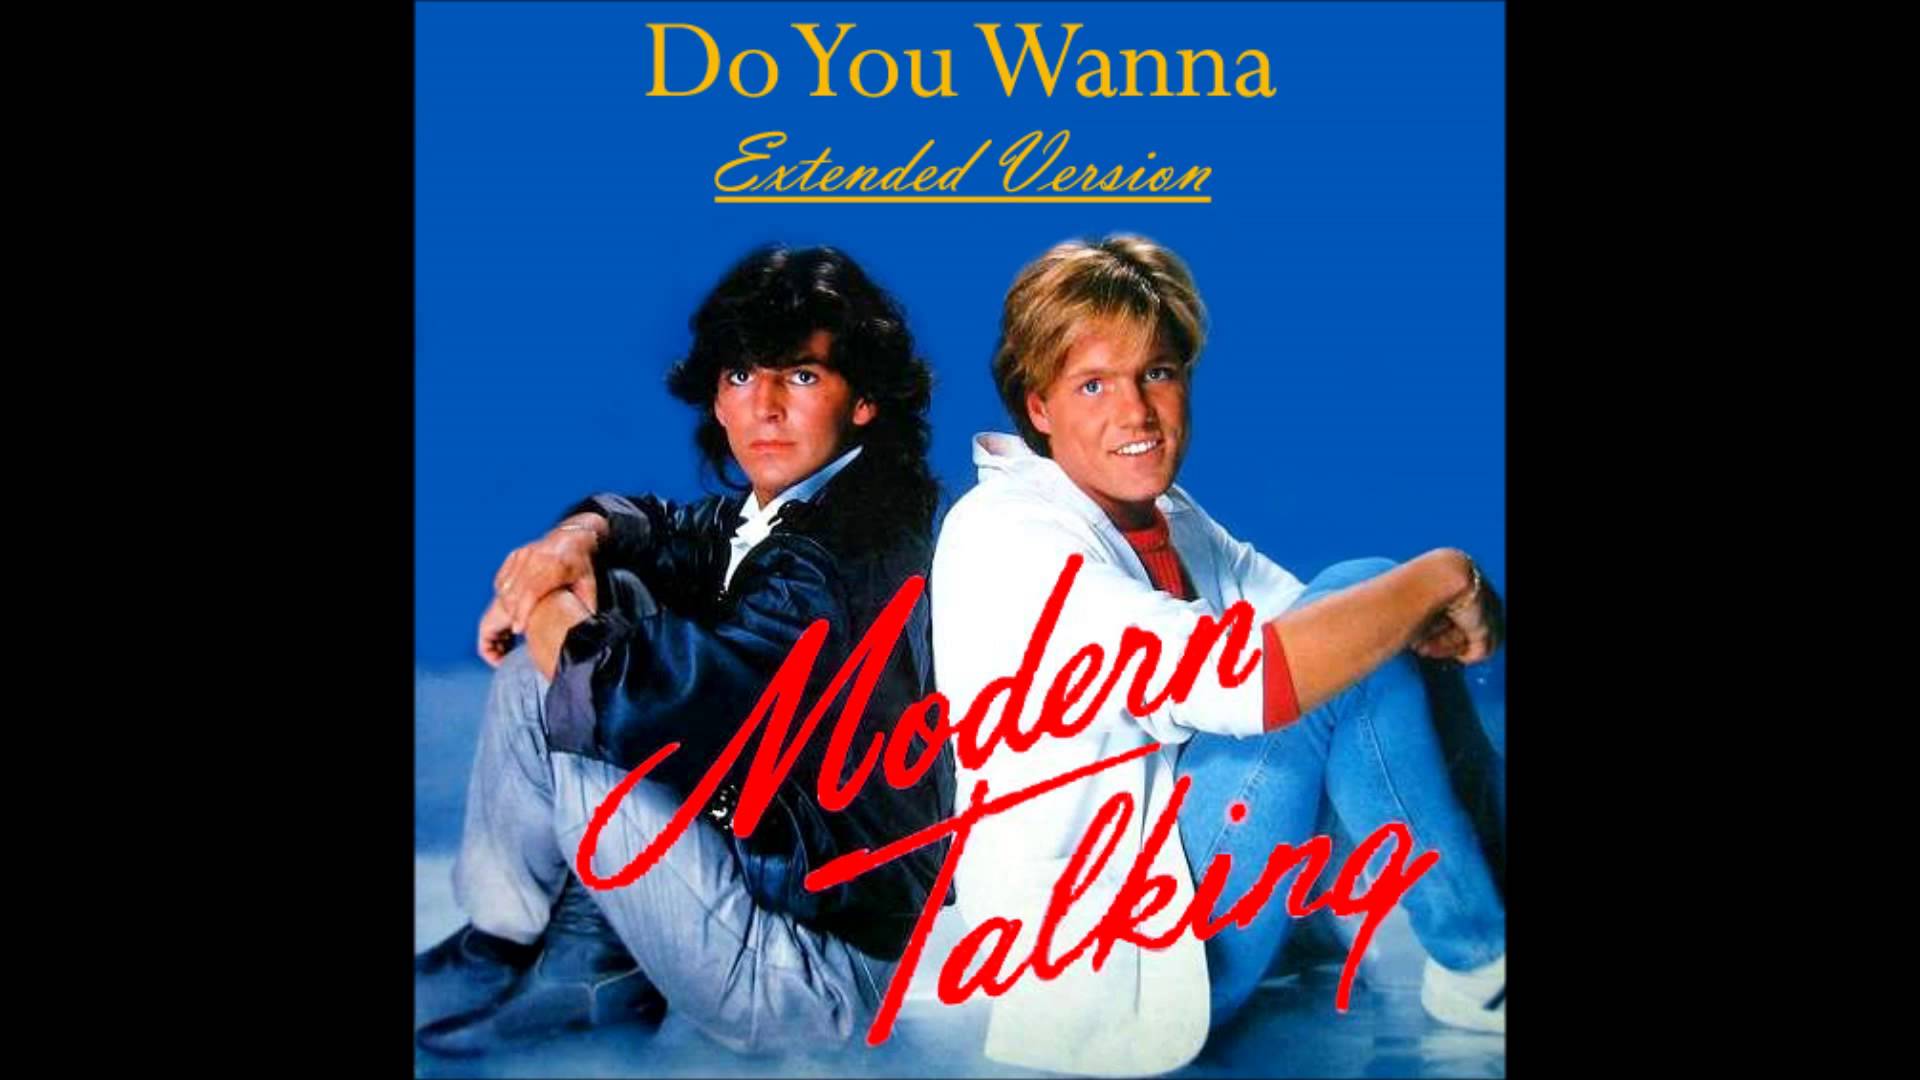 I wanna be you re. Модерн токинг Шери. Модерн токинг чери леди. Modern talking обложка 1989. Modern talking America обложка.